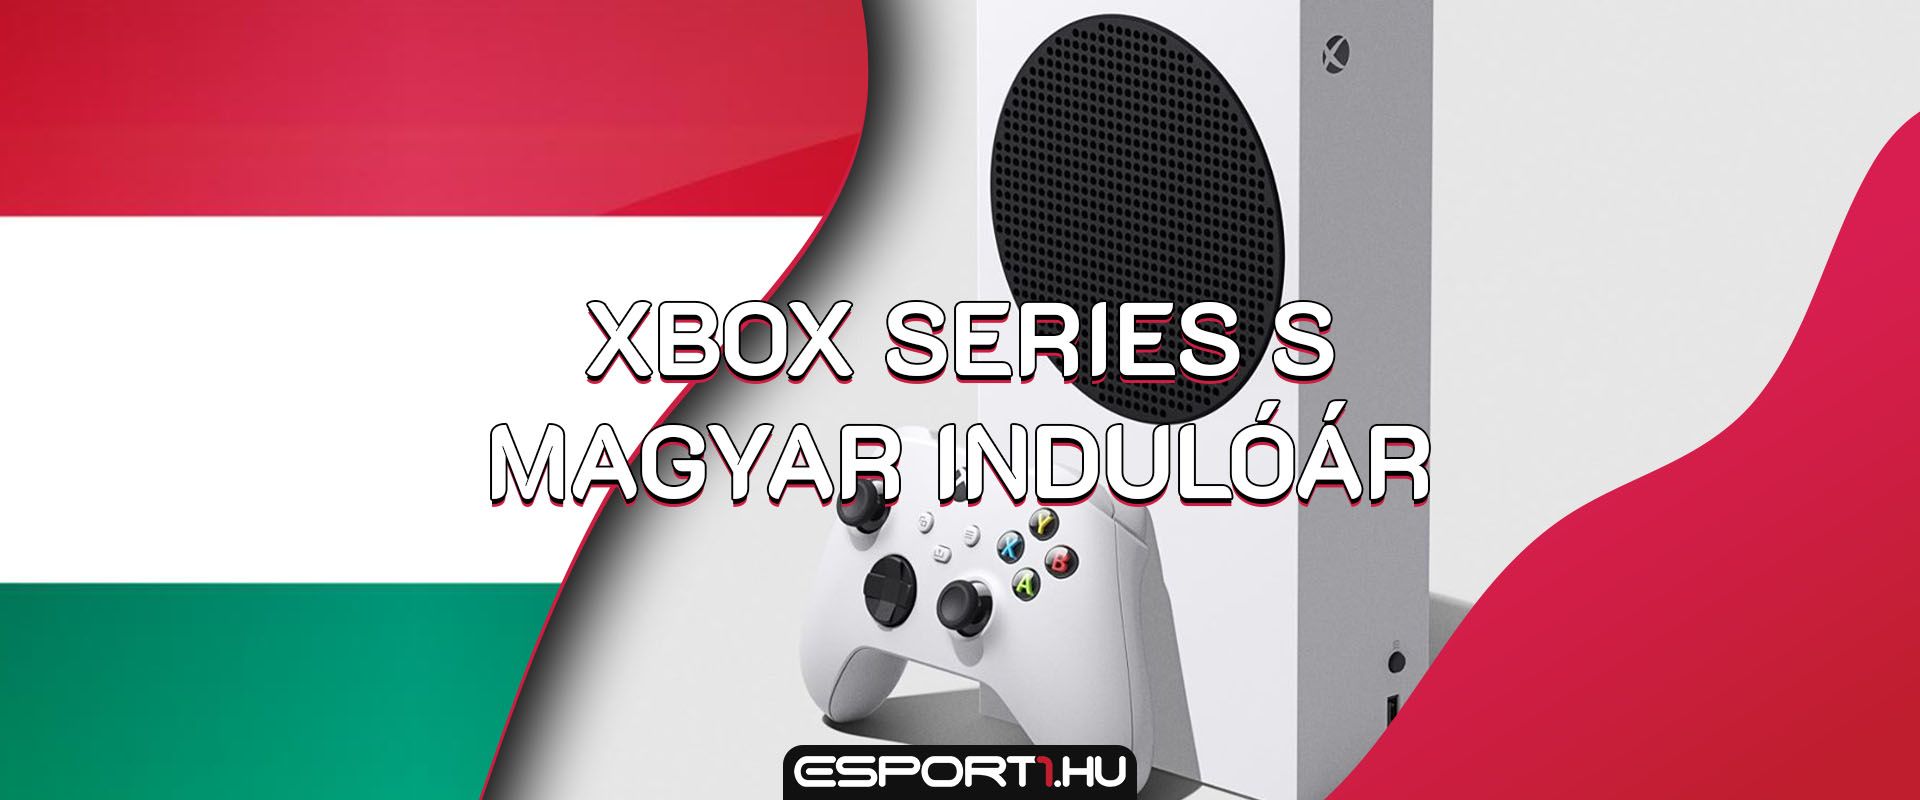 Hivatalos magyar indulóárat kapott az Xbox Series S